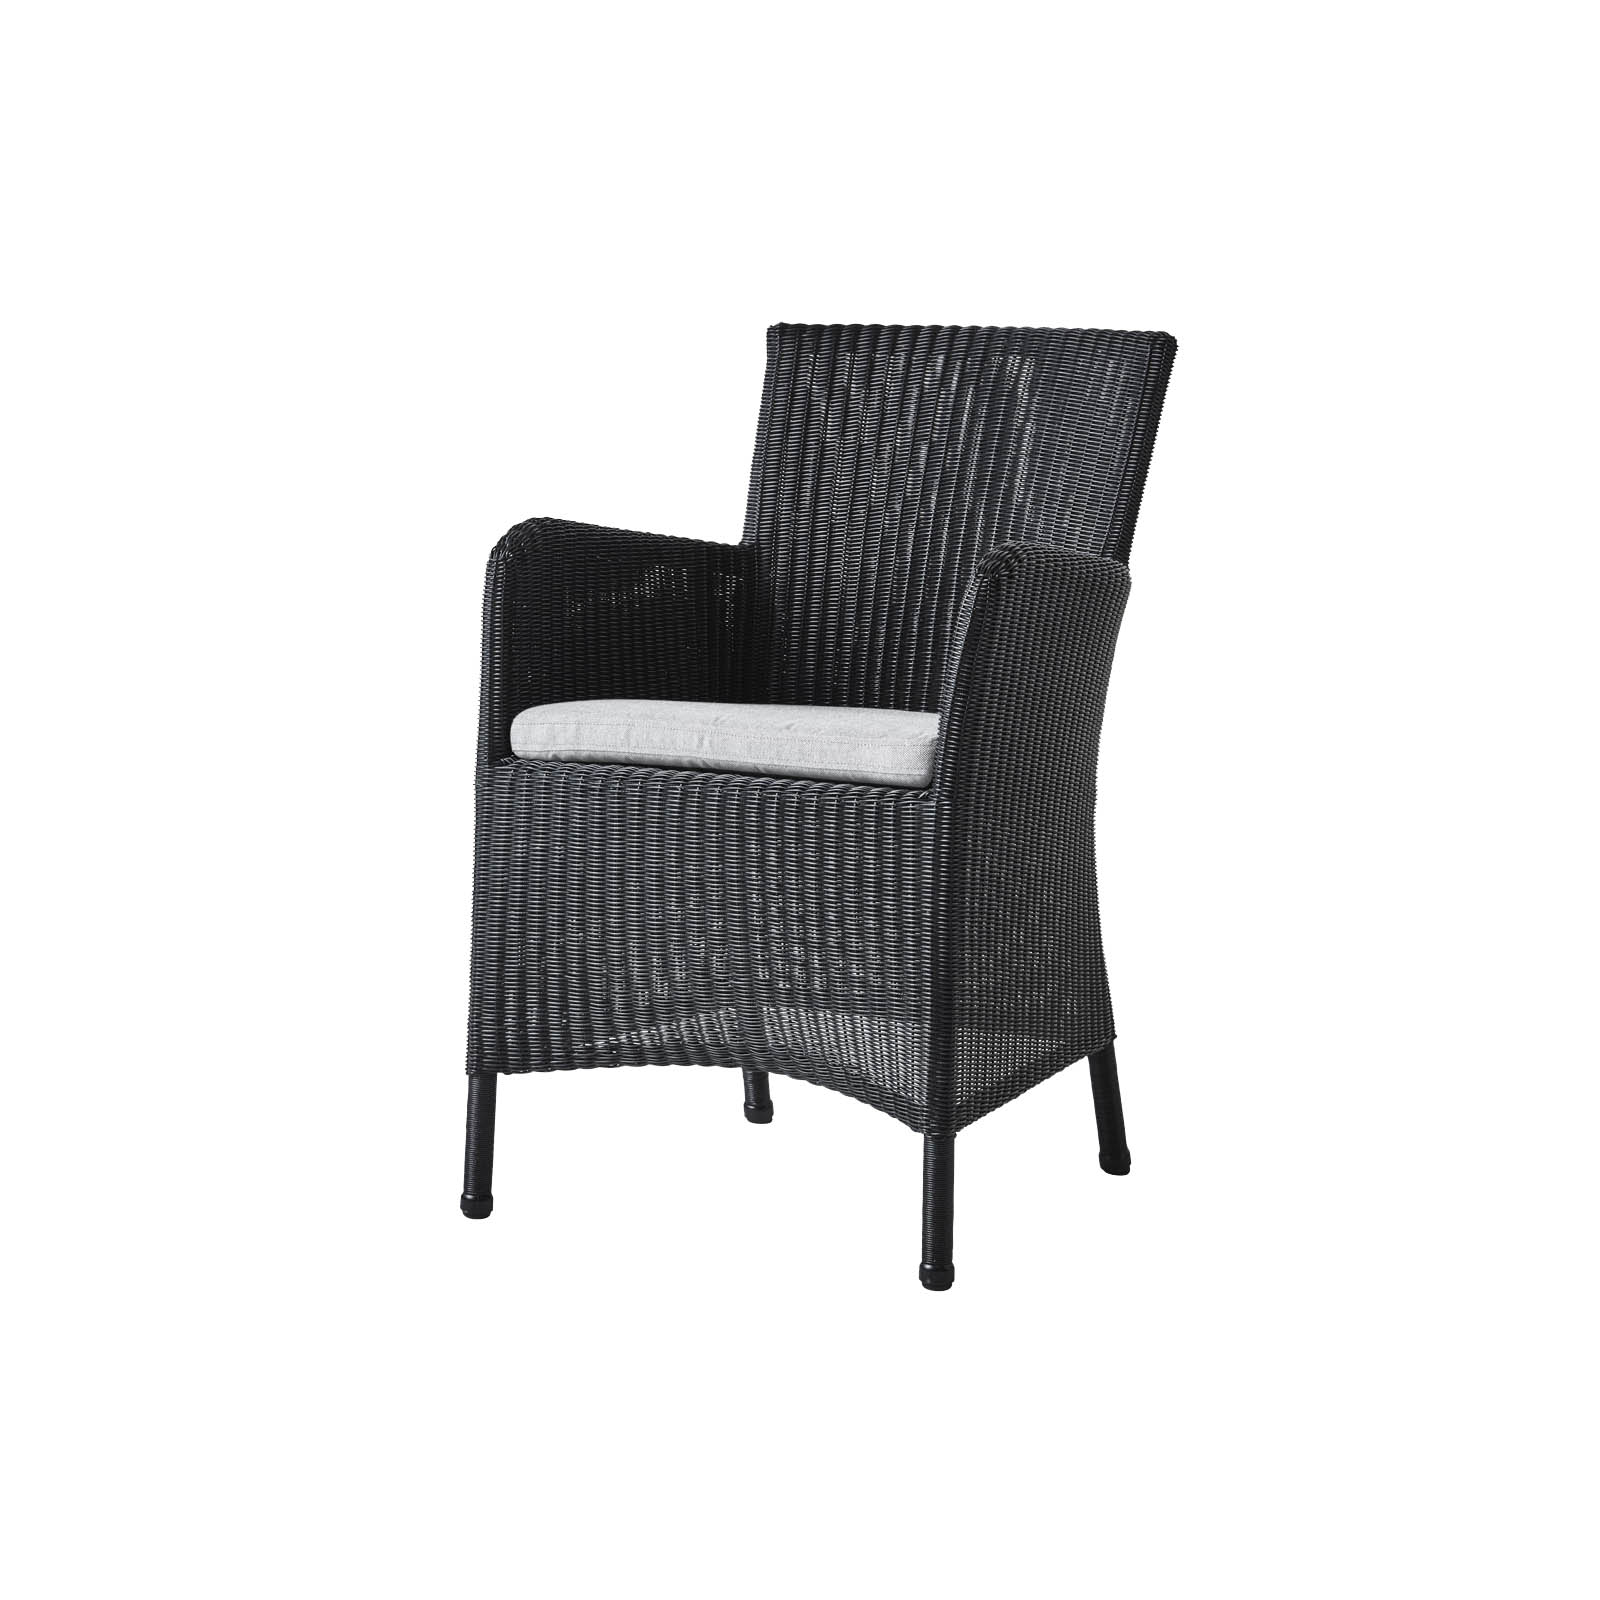 Hampsted Stuhl aus Cane-line Weave in Black mit Kissen aus Cane-line Natté in Light Grey